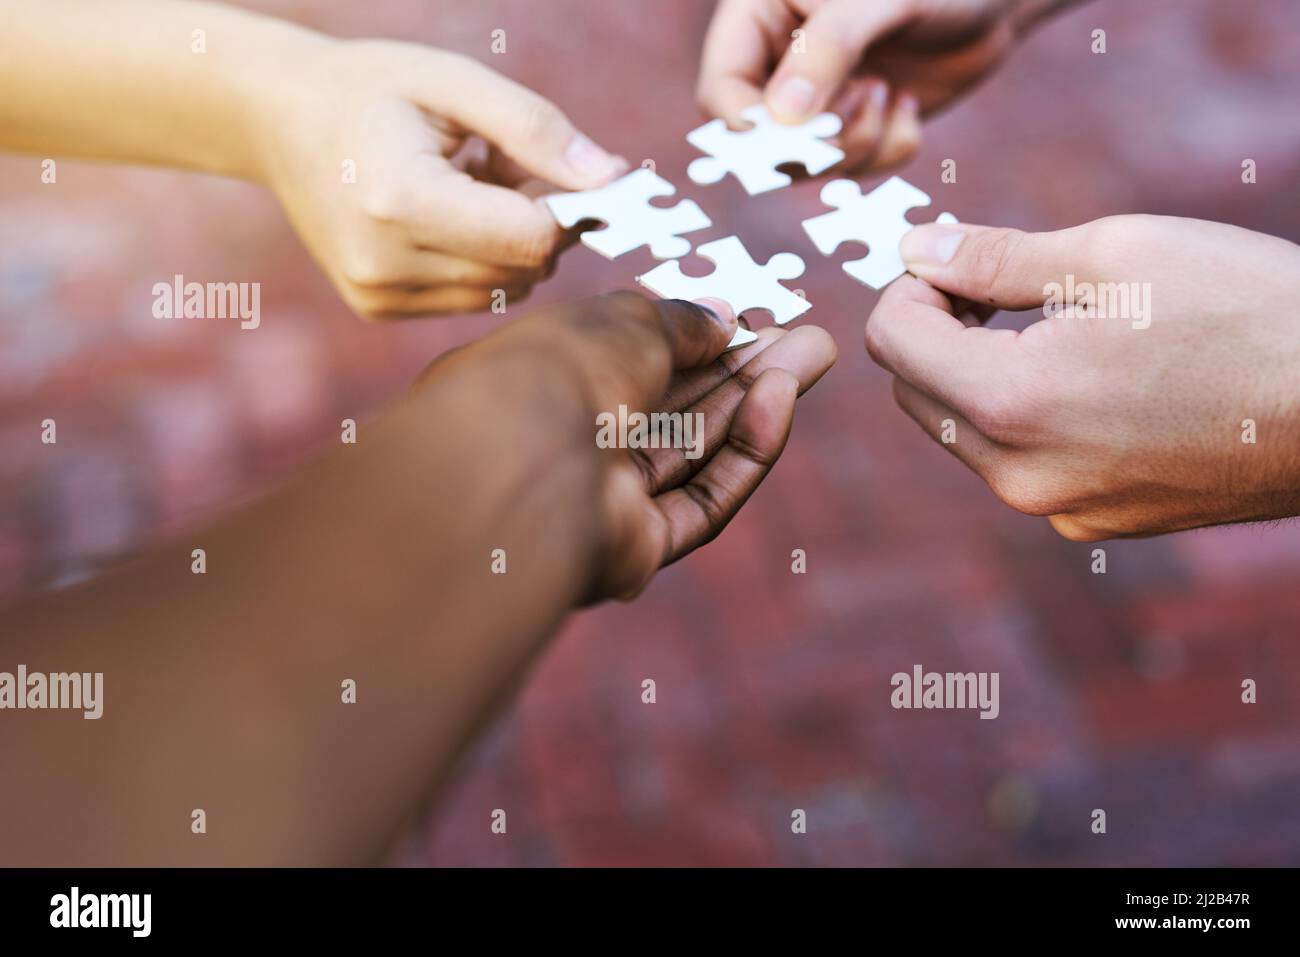 Trouver des solutions morceau par morceau. Photo de mains mettant des pièces de puzzle ensemble. Banque D'Images